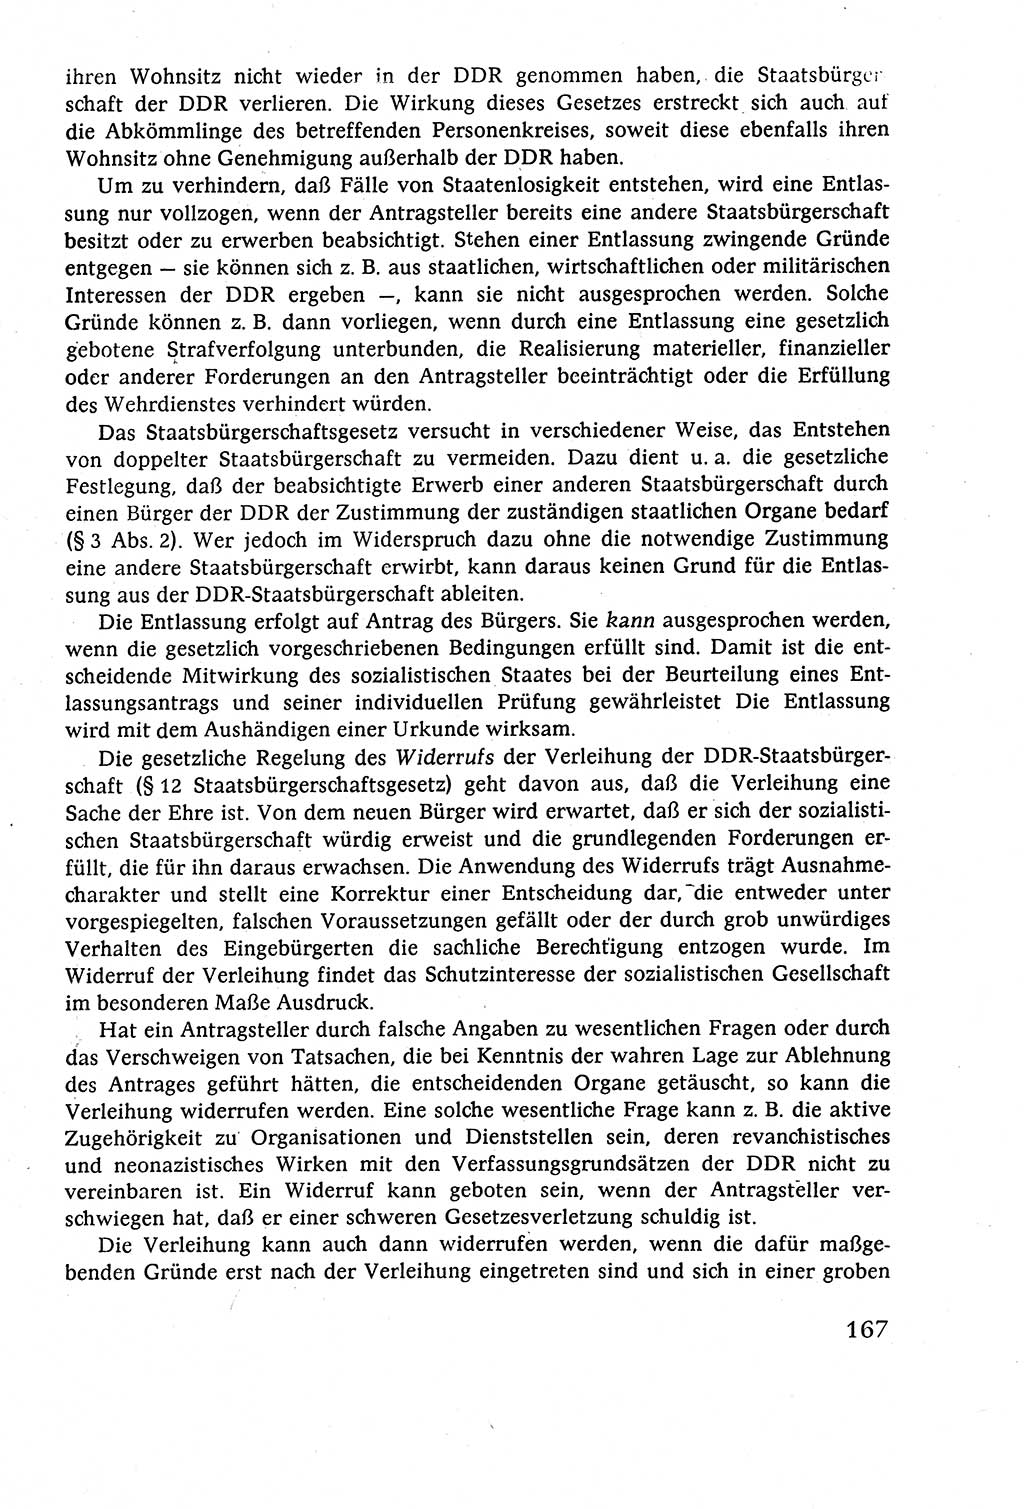 Staatsrecht der DDR (Deutsche Demokratische Republik), Lehrbuch 1977, Seite 167 (St.-R. DDR Lb. 1977, S. 167)